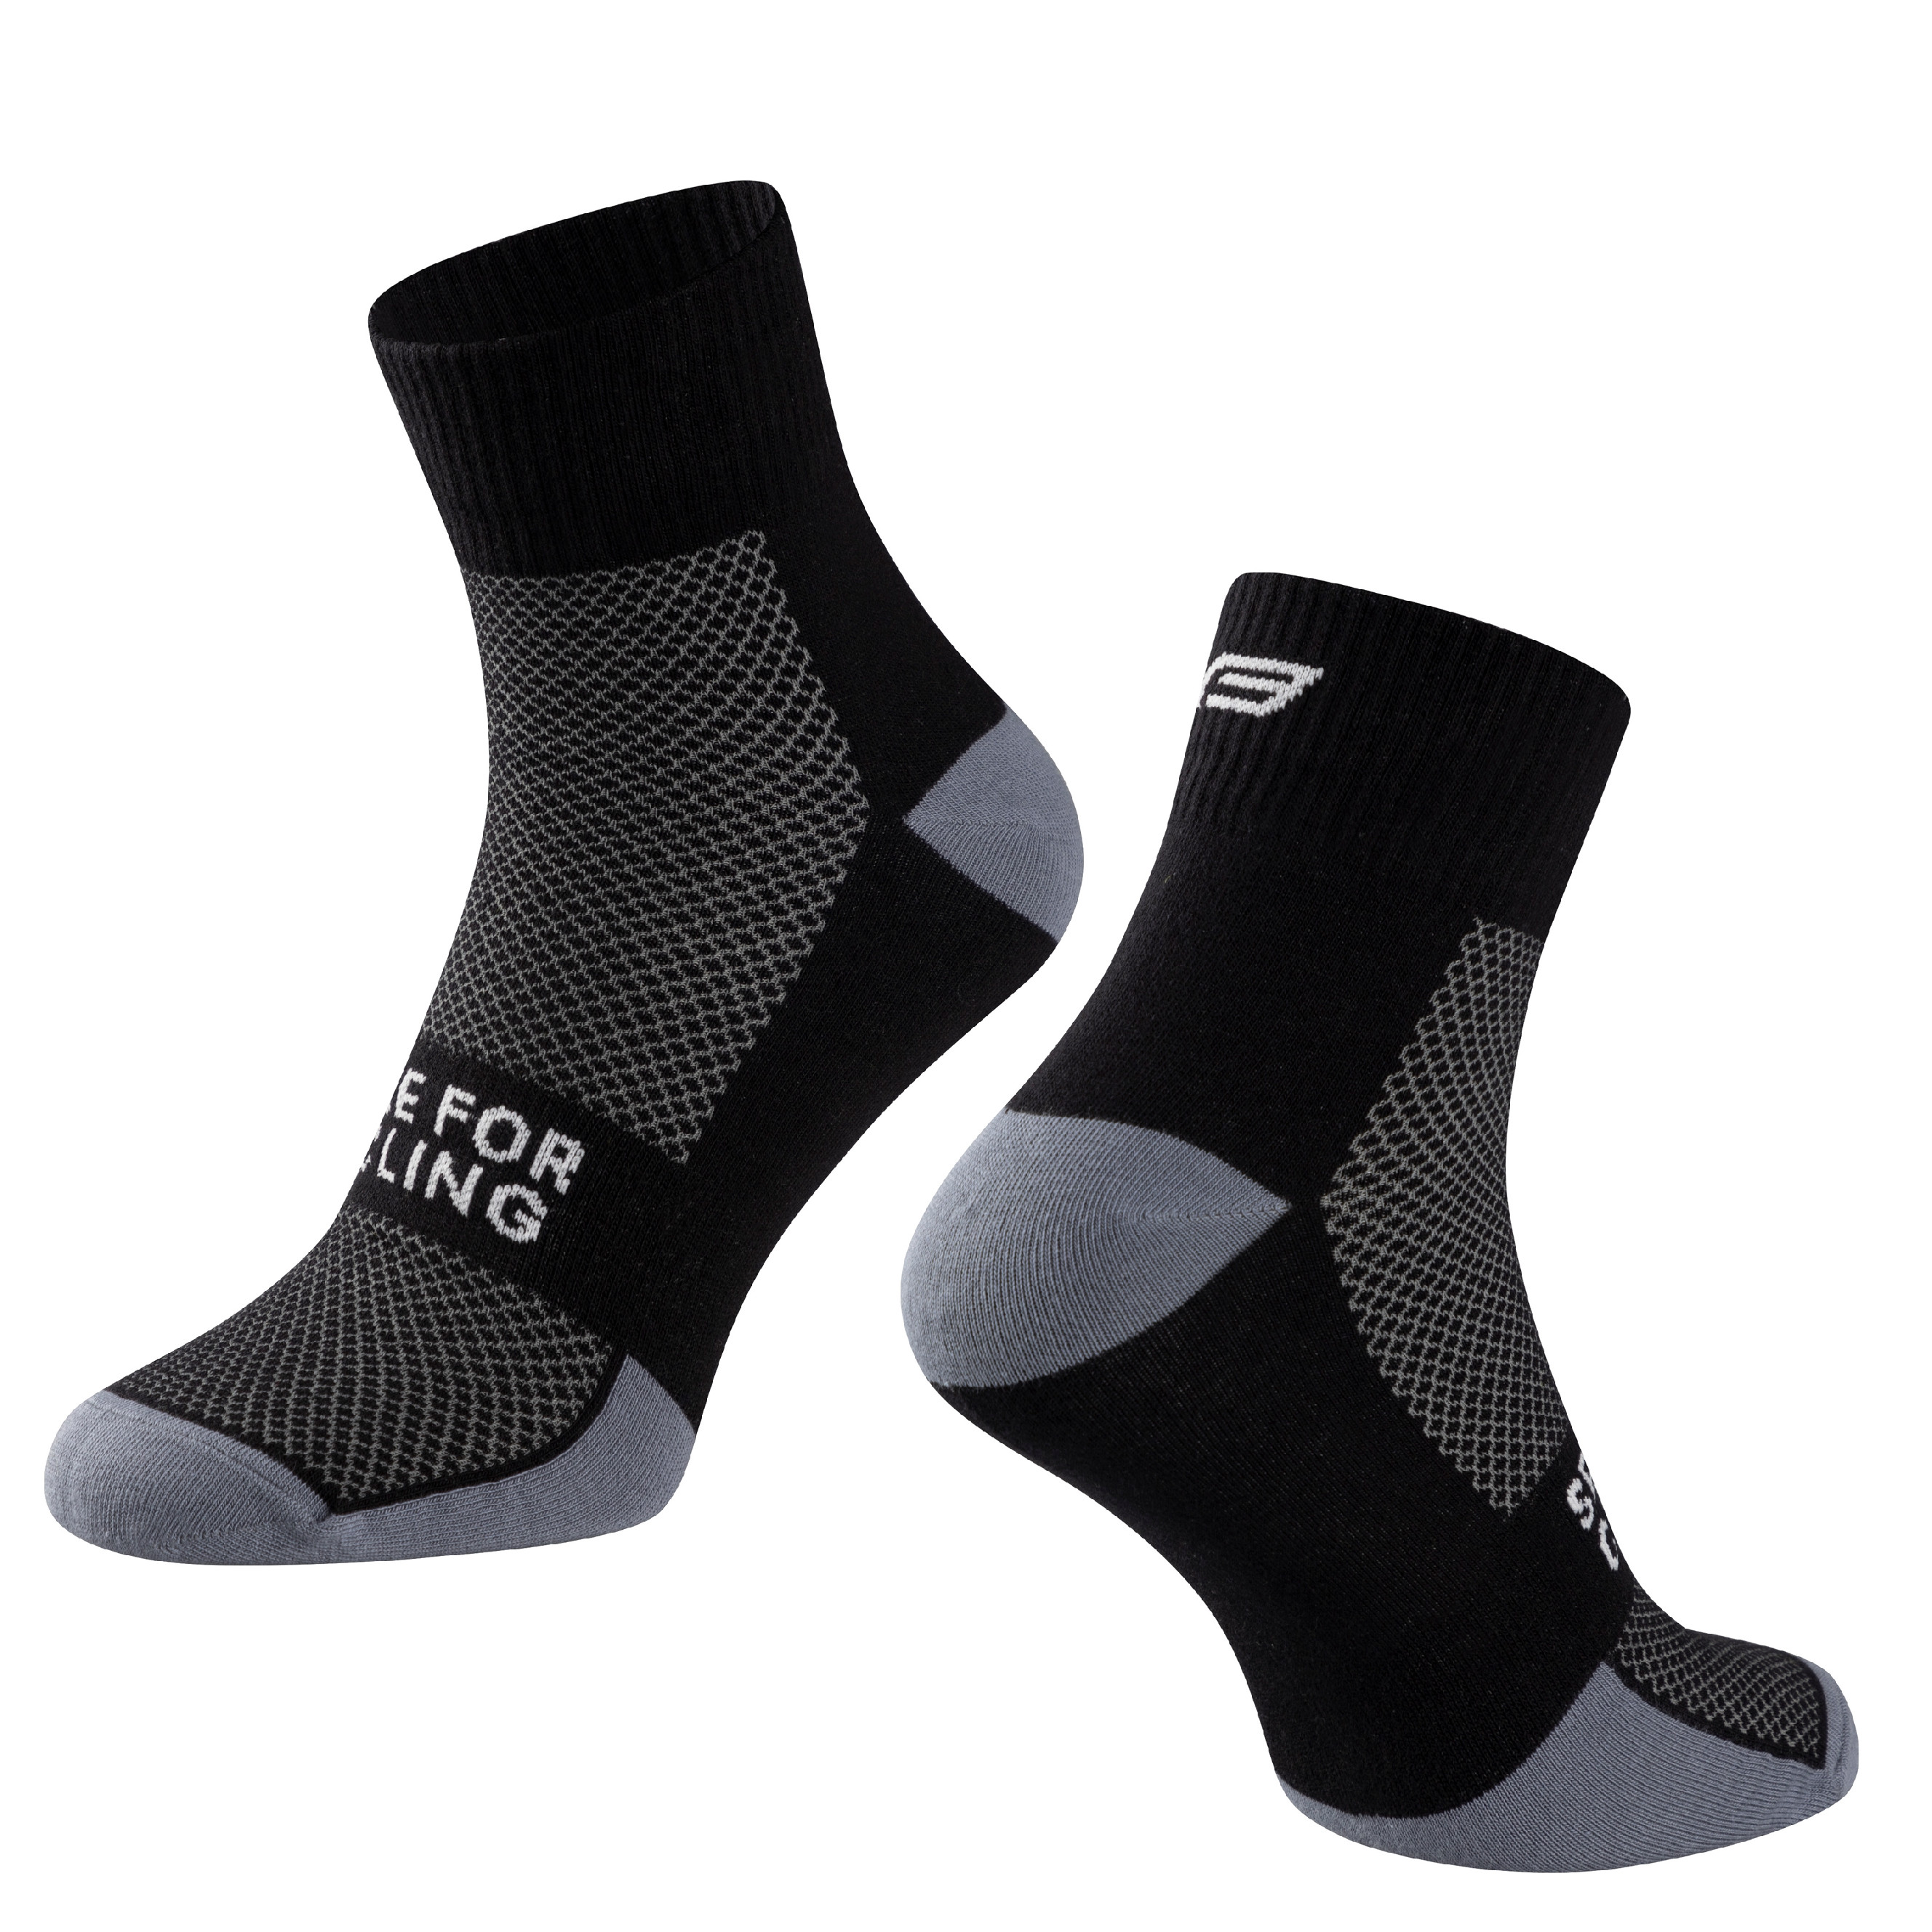 ponožky FORCE EDGE, černo-šedé L-XL/42-46 Velikost: L-XL